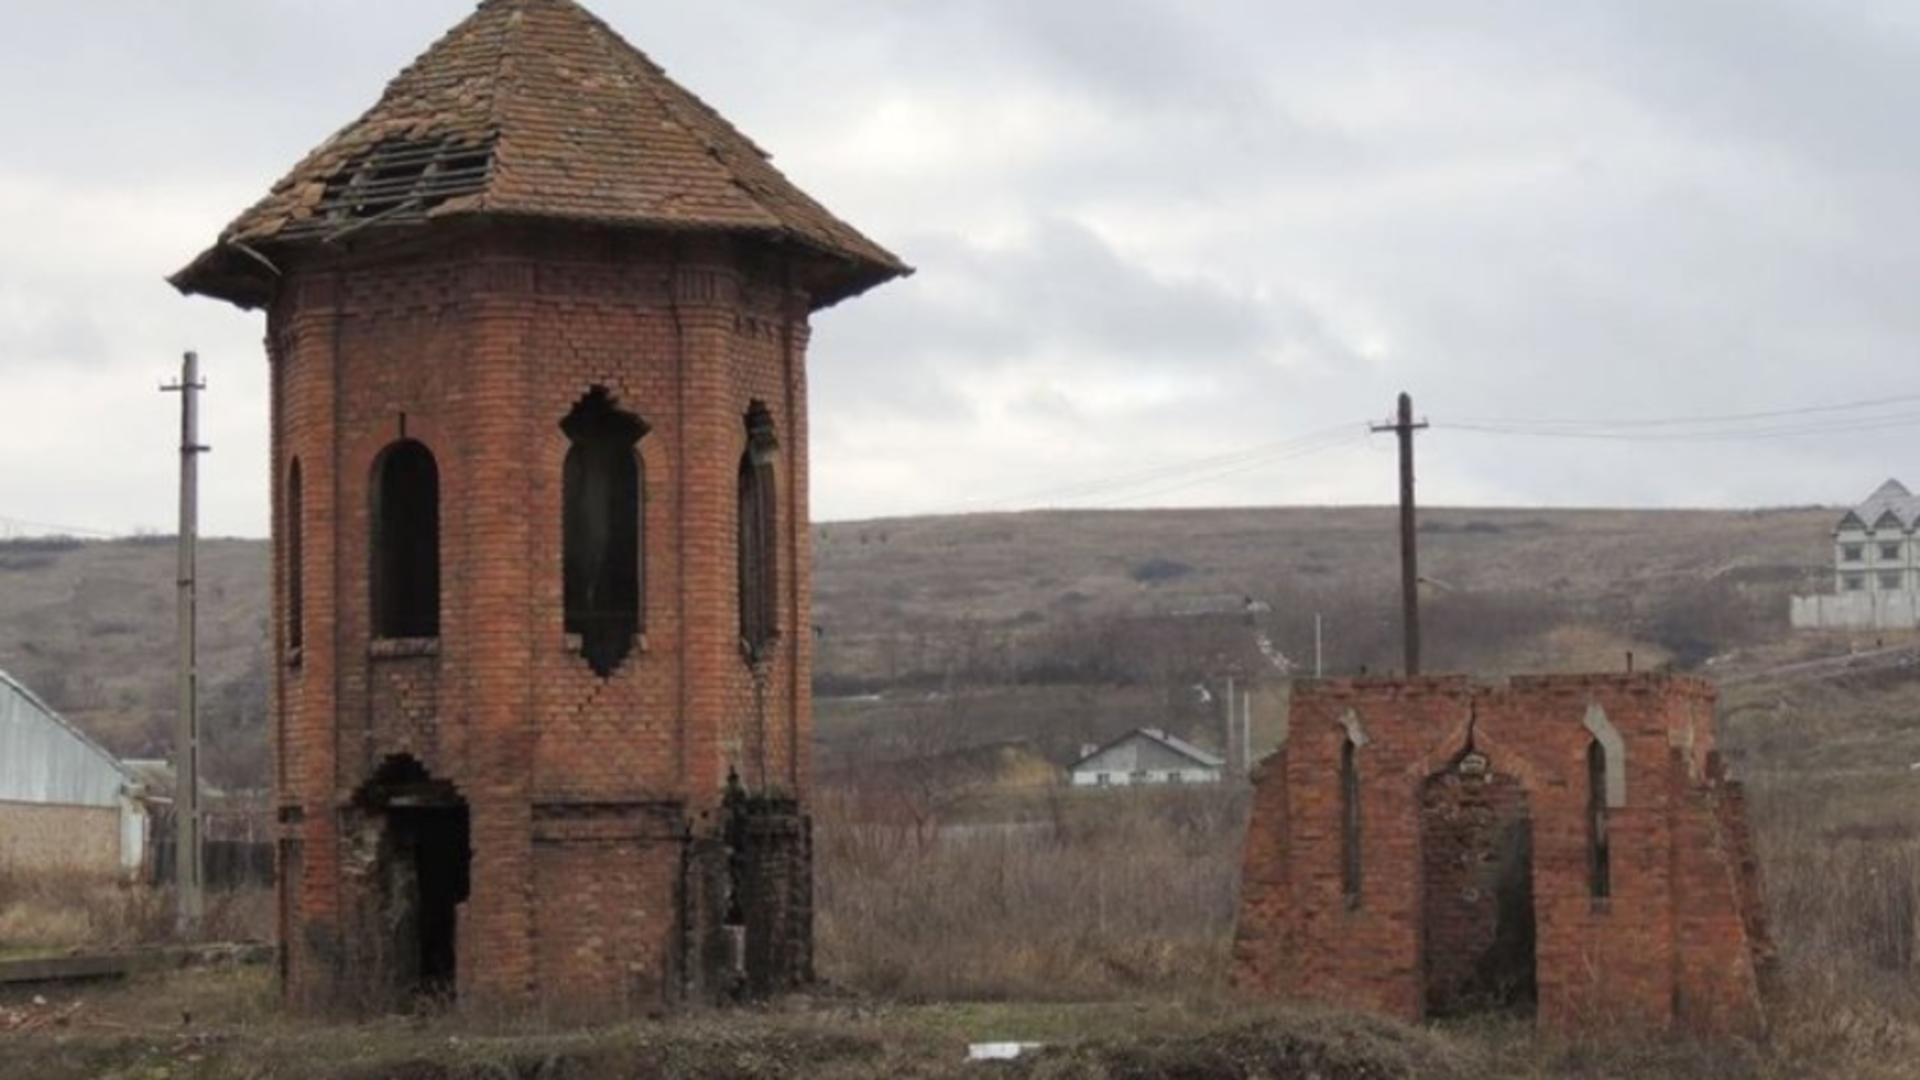 Fabrica de Cărămizi de la Ciurea, monument istoric, este furată bucată cu bucată. Foto: Ziarul de Iași